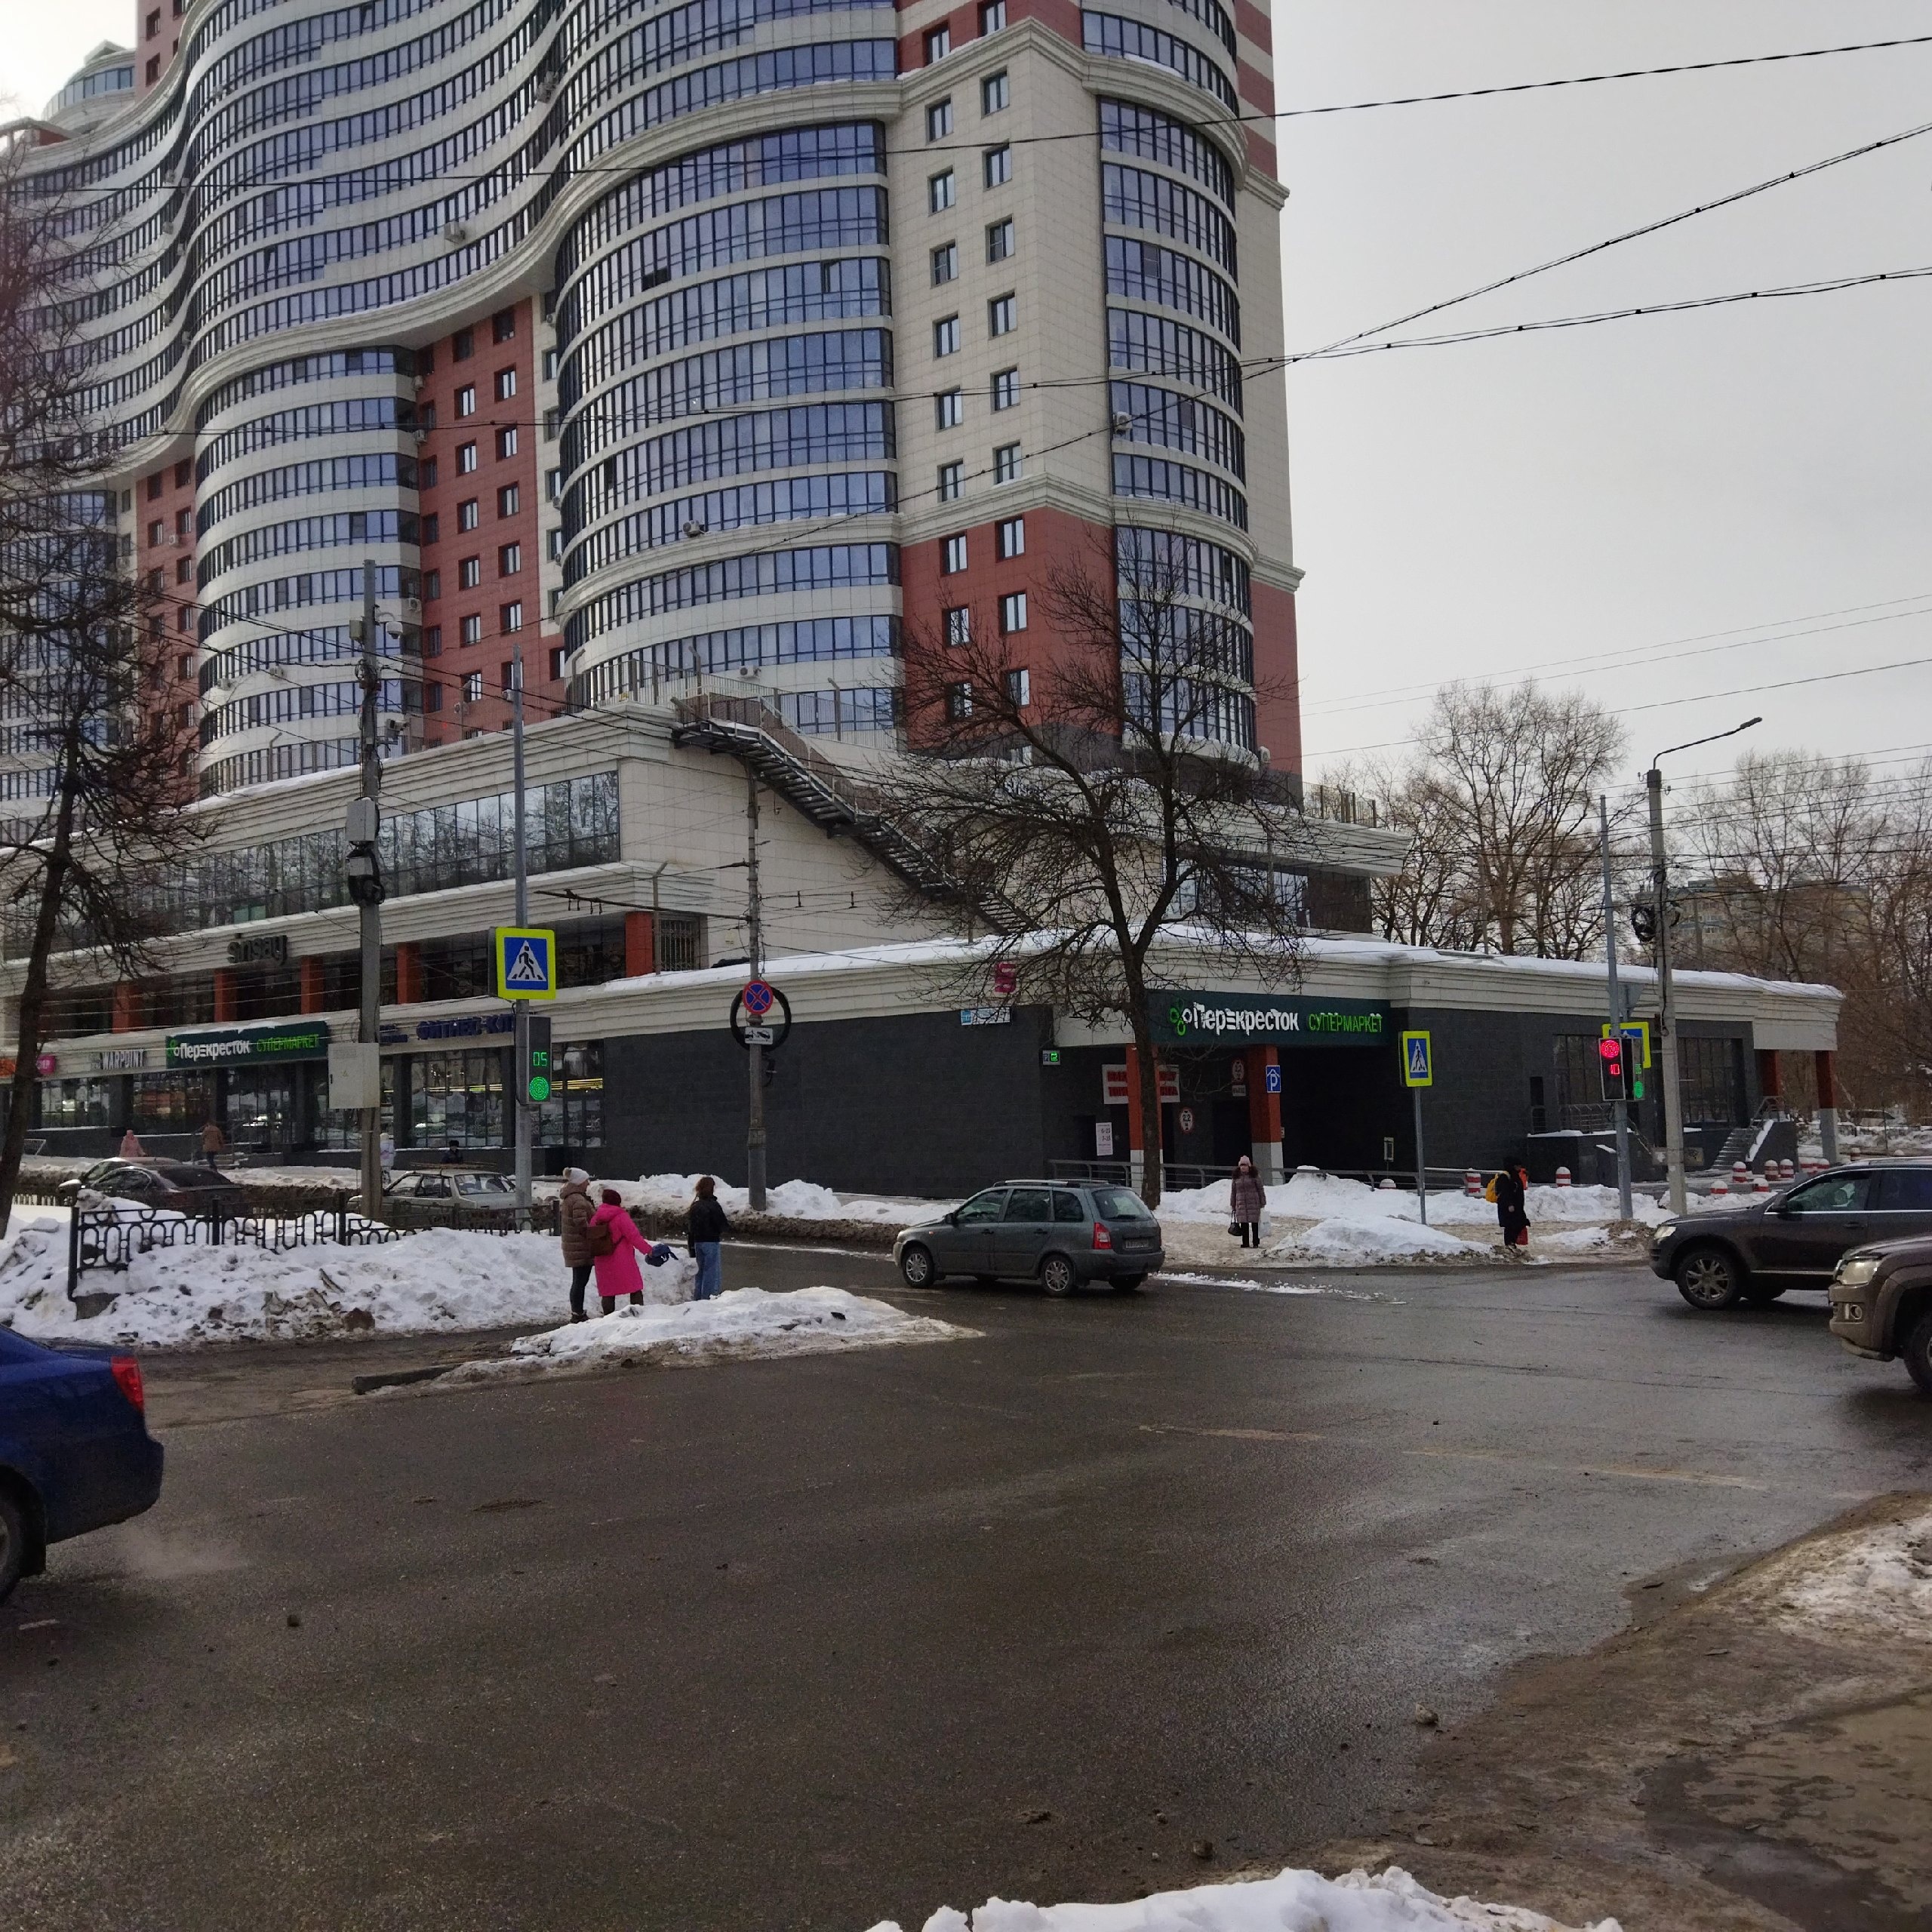 Мороз до минус 21: какой будет погода в Кирове в ближайшие дни, 9 и 10 марта? 